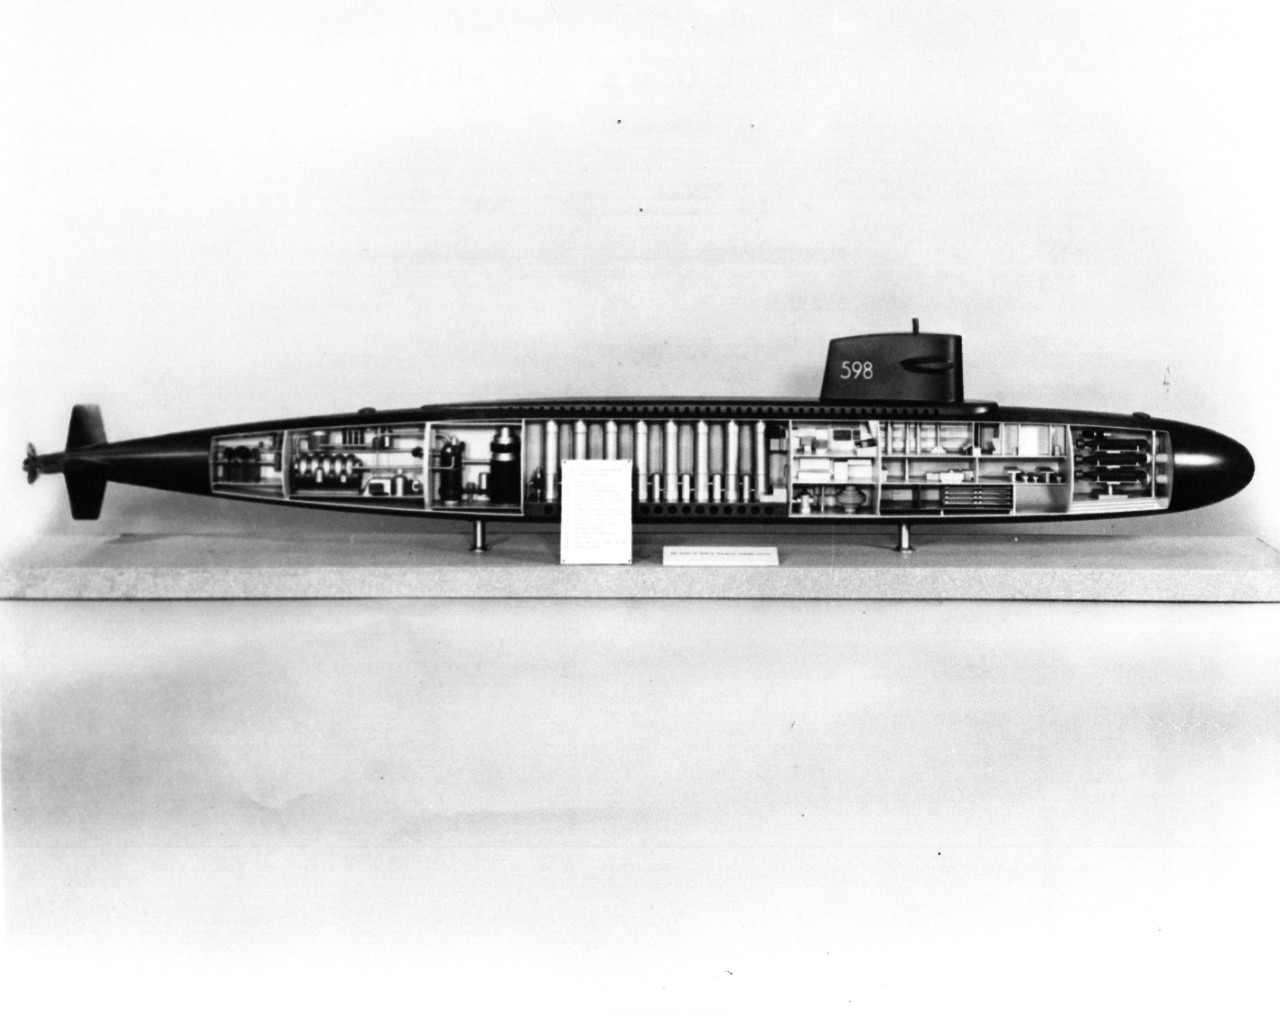 <p>L45-108-08-018 Cutaway Model of USS George Washington (SSBN-598)</p>
